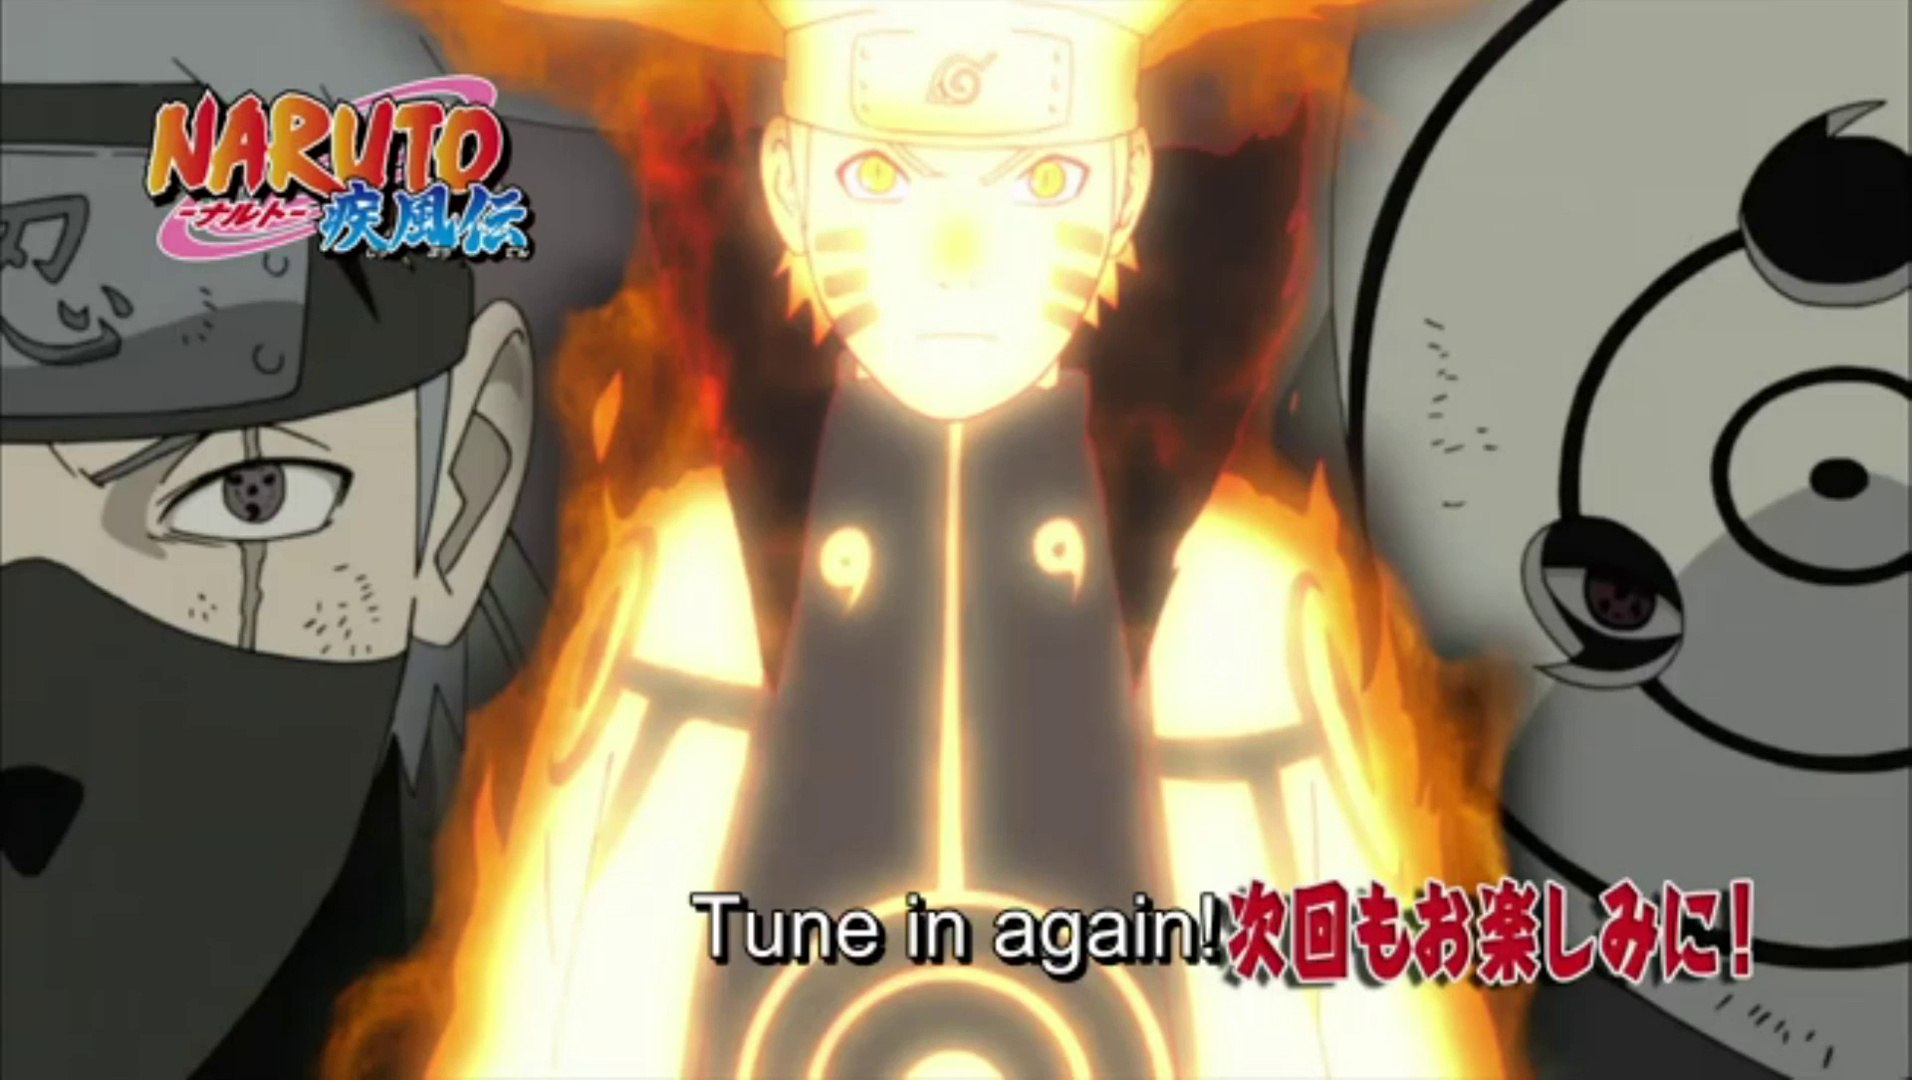 ᴴᴰ Hashirama: 1st Hokage vs Madara Uchiha ( Com vs Com ) Naruto